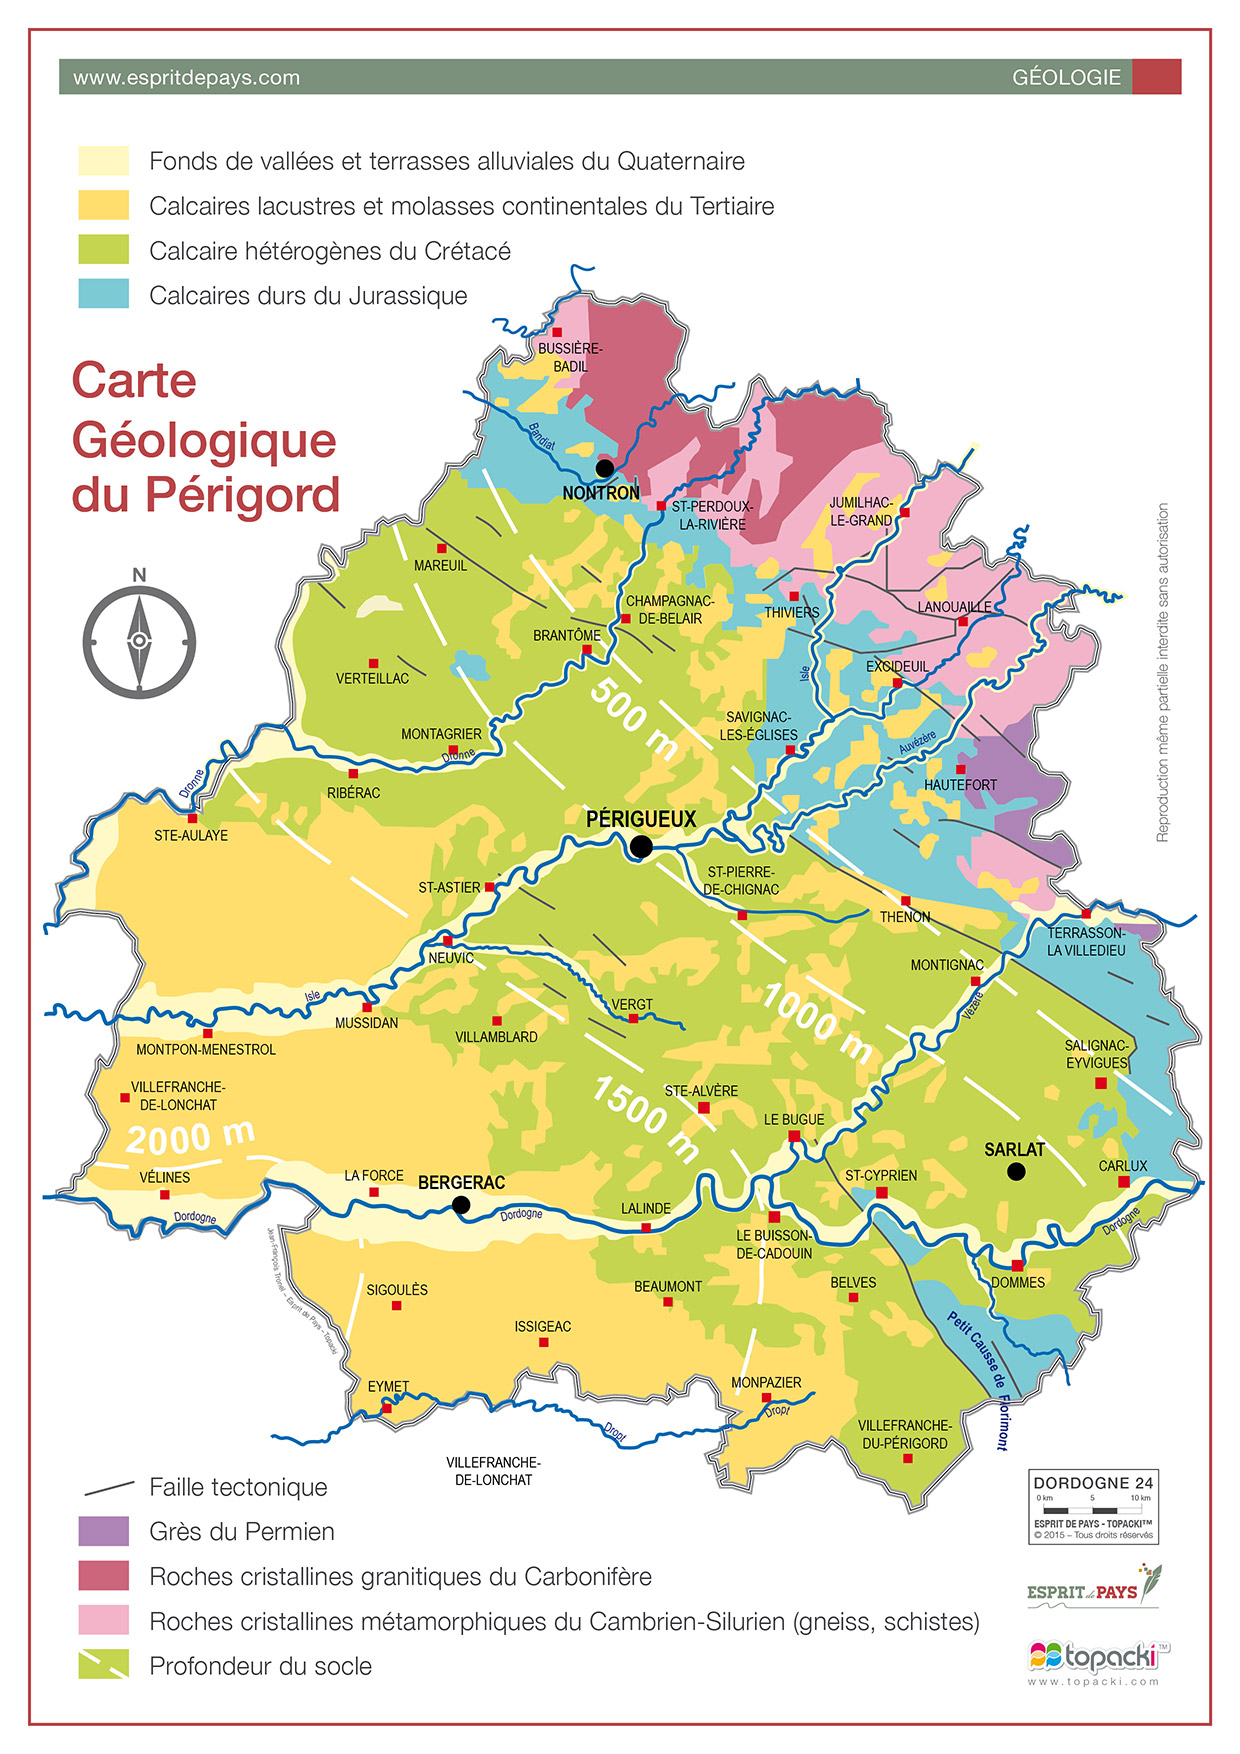 Cartographie : géologie du Périgord